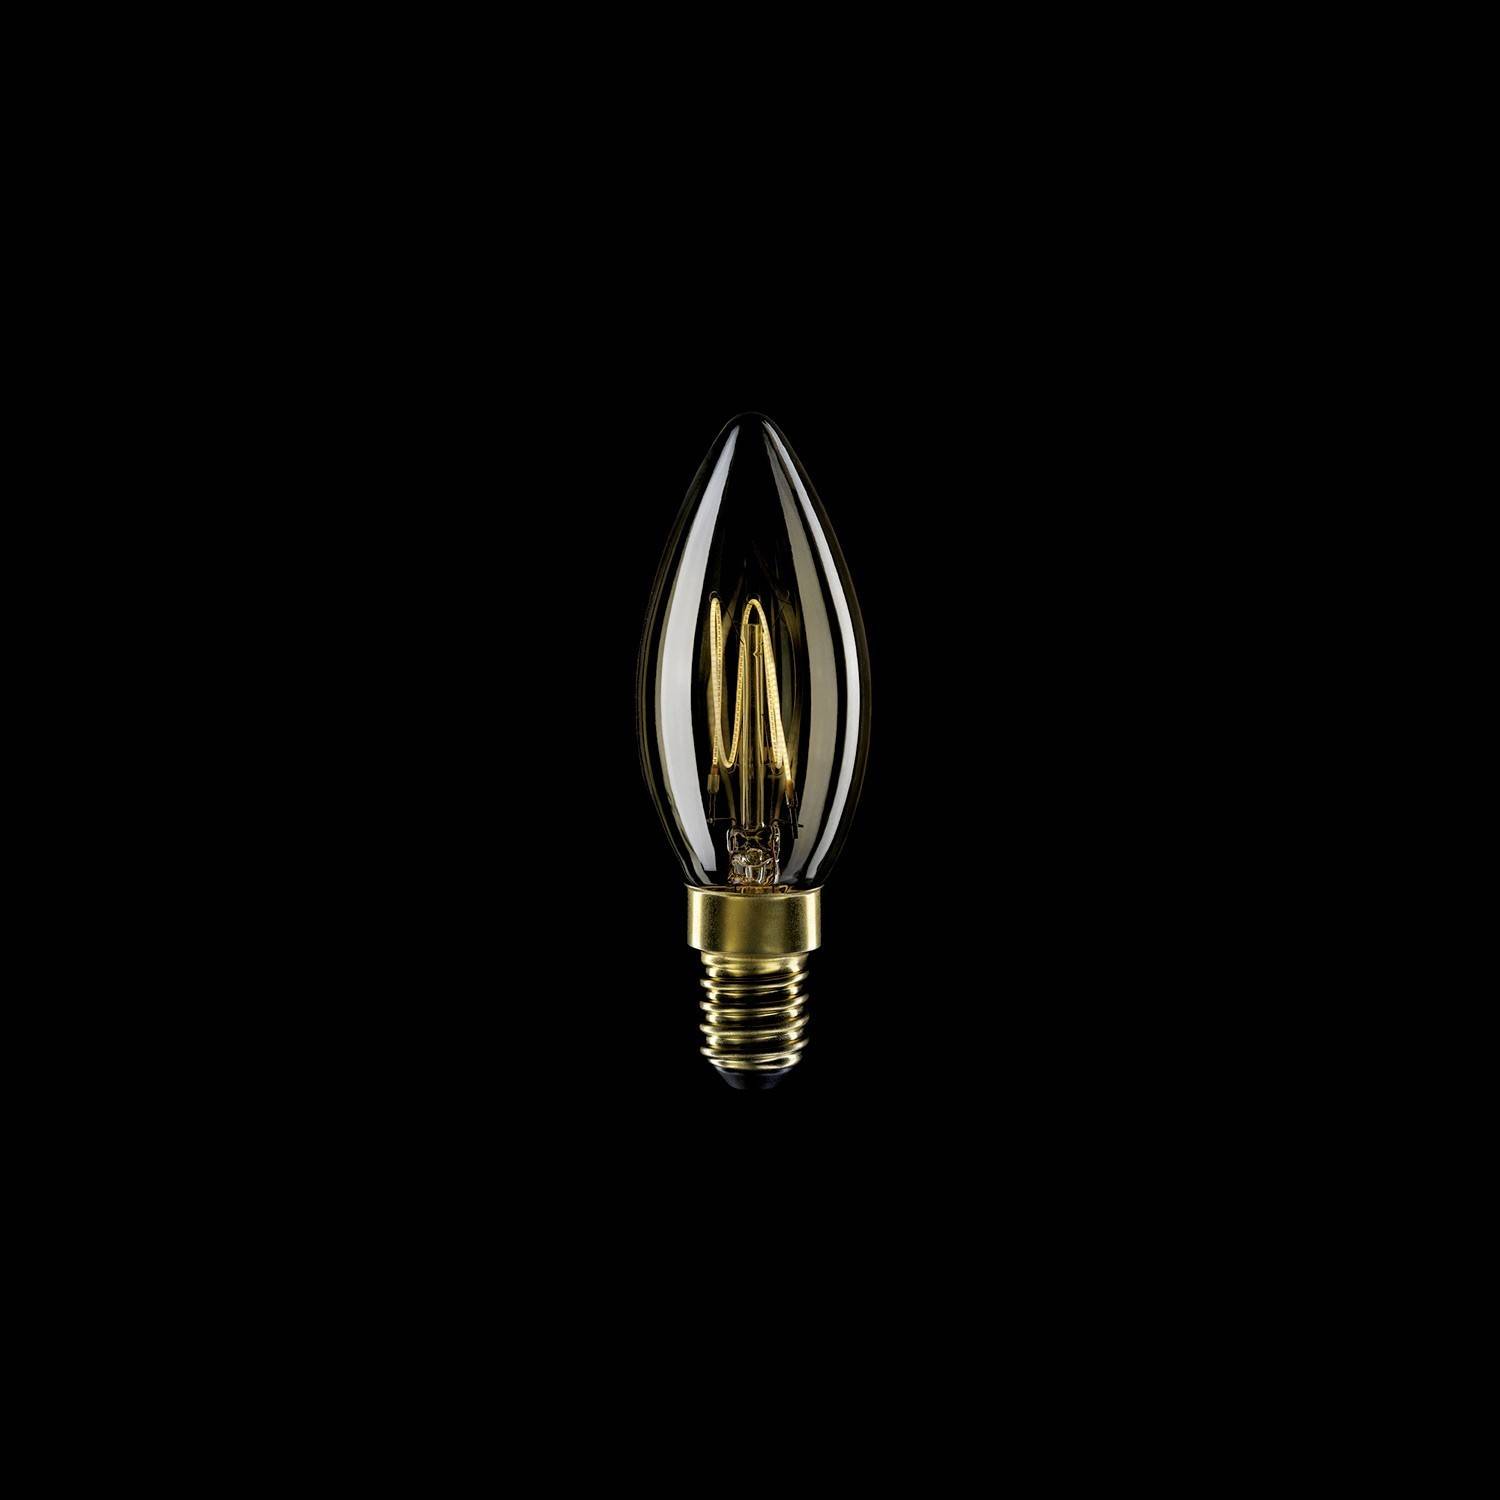 Bec cu LED cu filament de carbon în formă de lumină aurie, tip lumânare C35 3,5W 300Lm E14 2700K, reglabil - C51